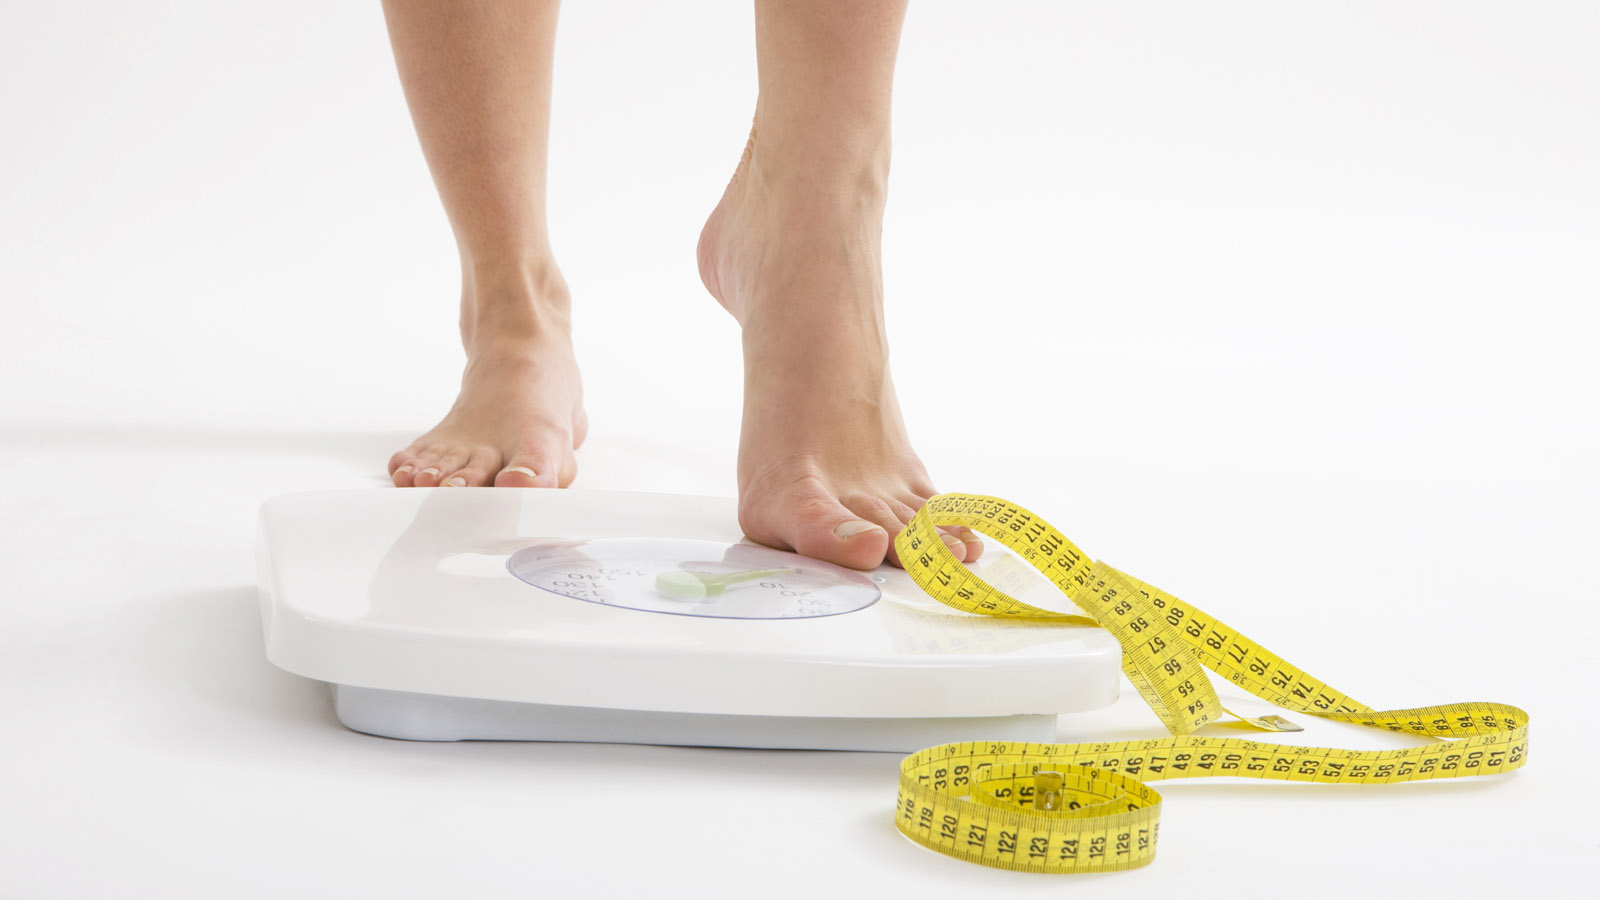 Chế độ ăn thực dưỡng giúp giảm cân, giảm mỡ hiệu quả